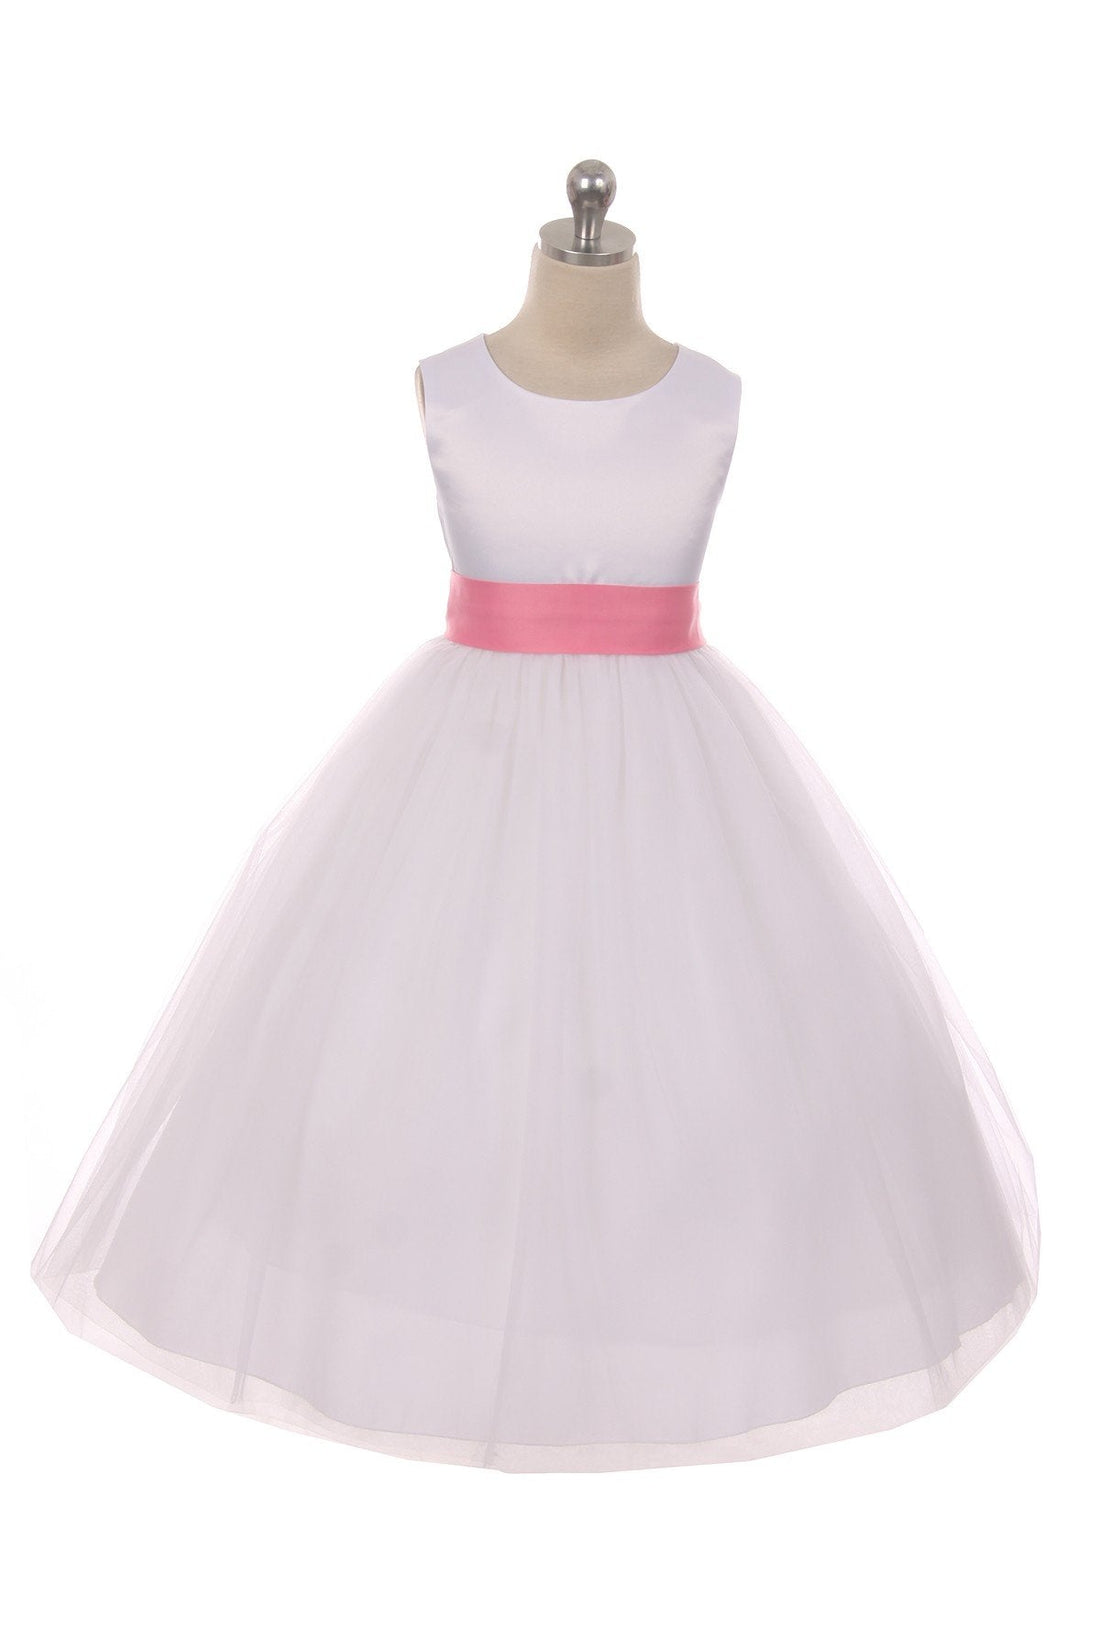 Rose Girl Dress - Ivory Satin Sash Bow Girl Dress - AS411 Kids Dream